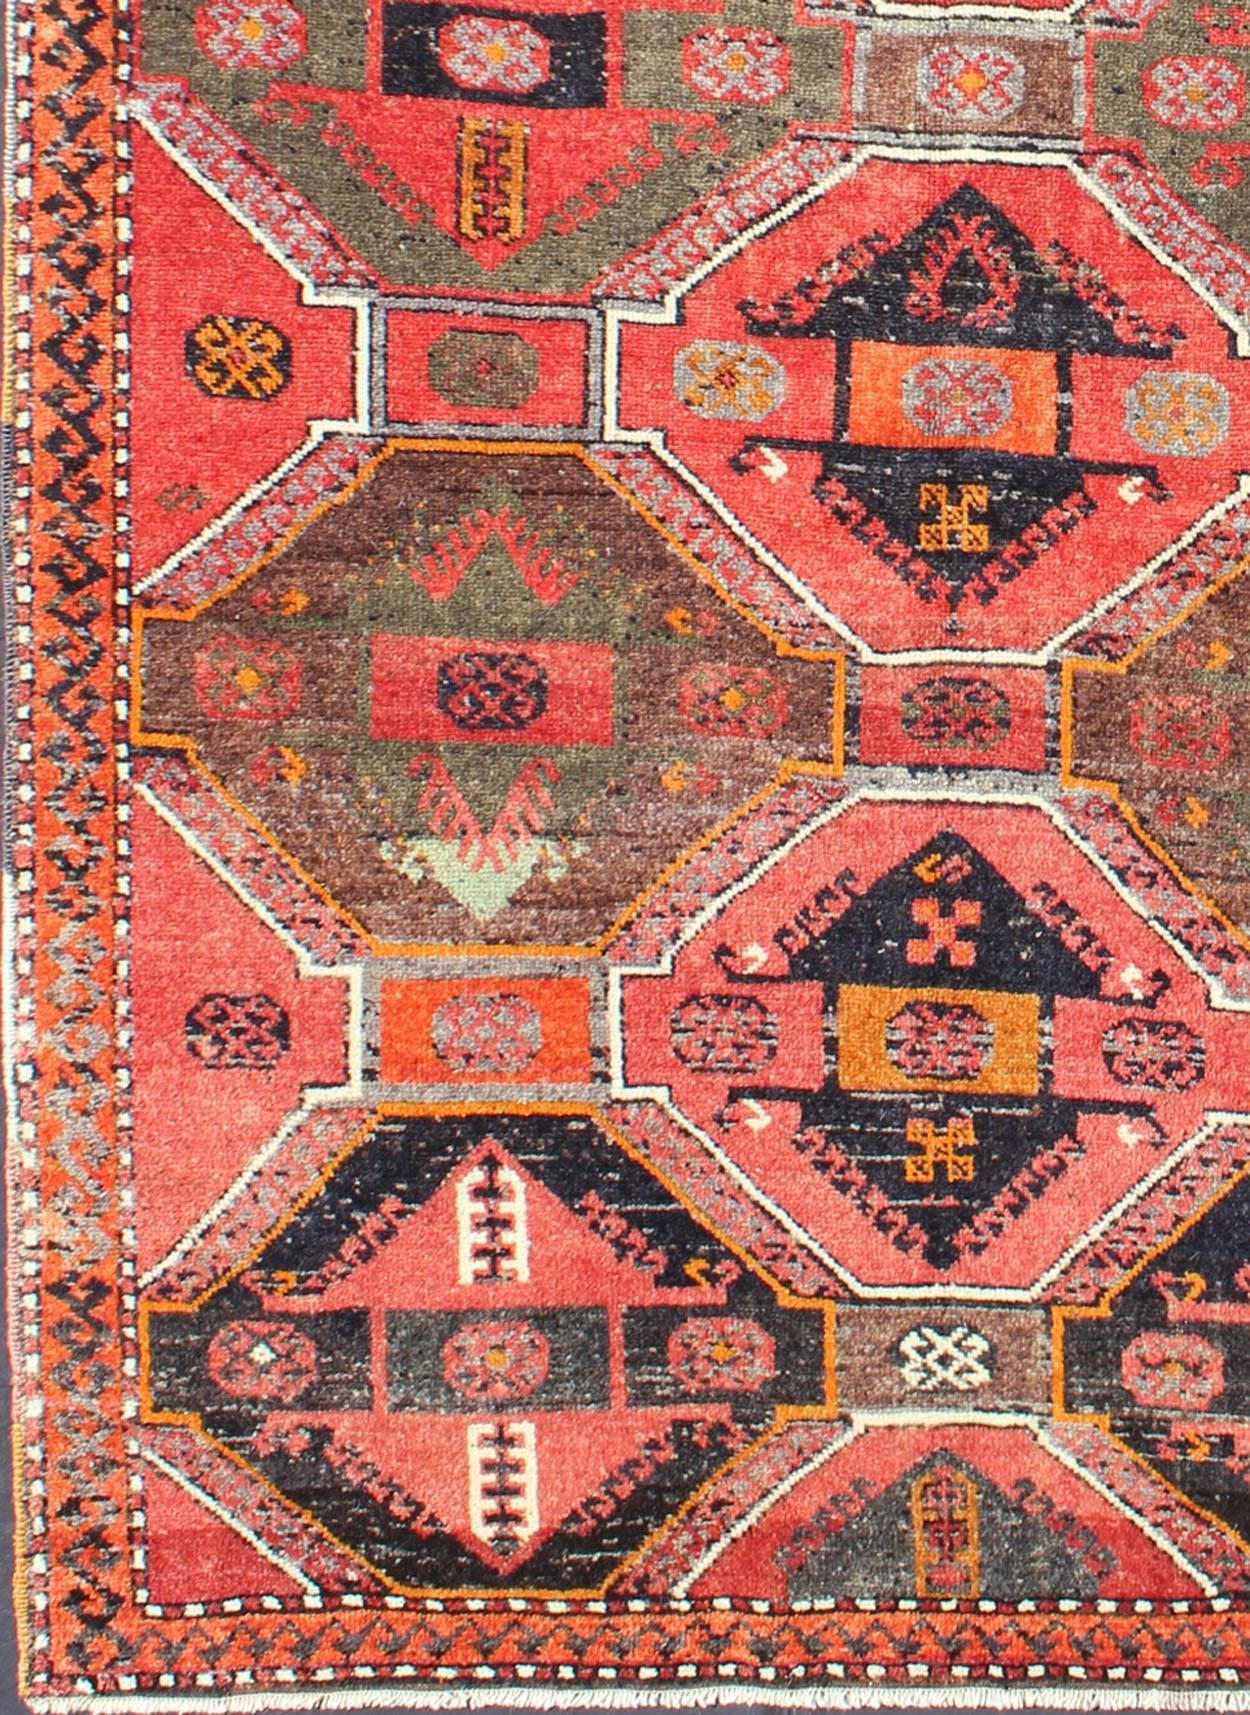 Mesures : 3'10'' x 6'9''.
Ce tapis galerie turc Oushak (vers le milieu du XXe siècle) présente un assortiment de médaillons géométriques qui occupent le centre de la scène sur un champ rouge vif. La bordure révèle un motif d'inspiration tribale